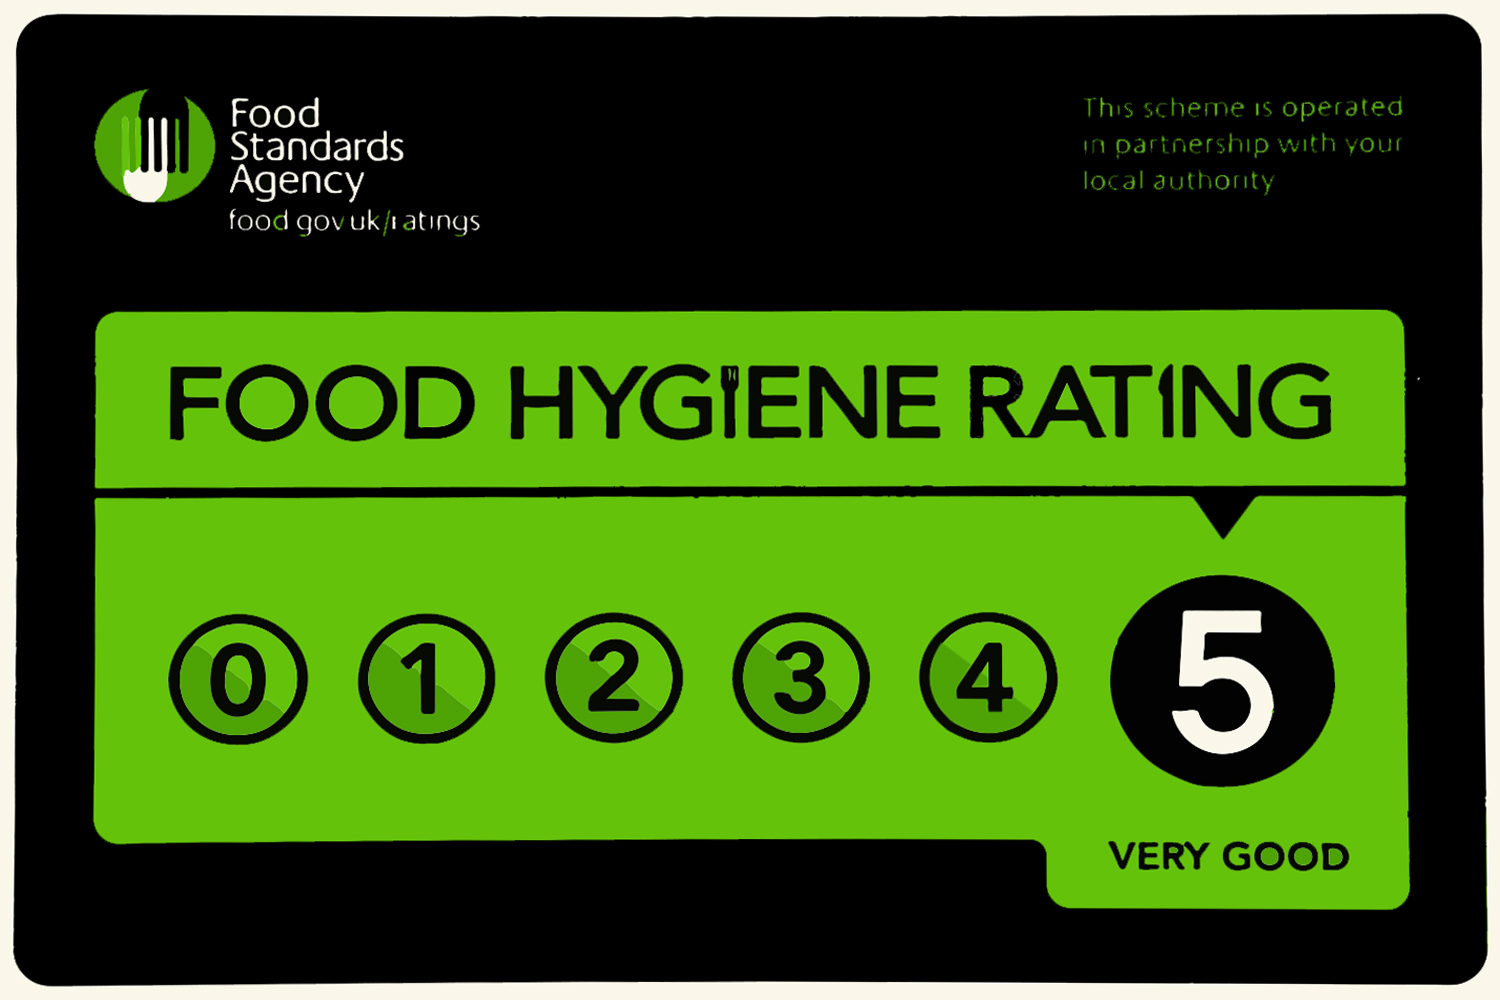 castle lodge ely food hygiene rating